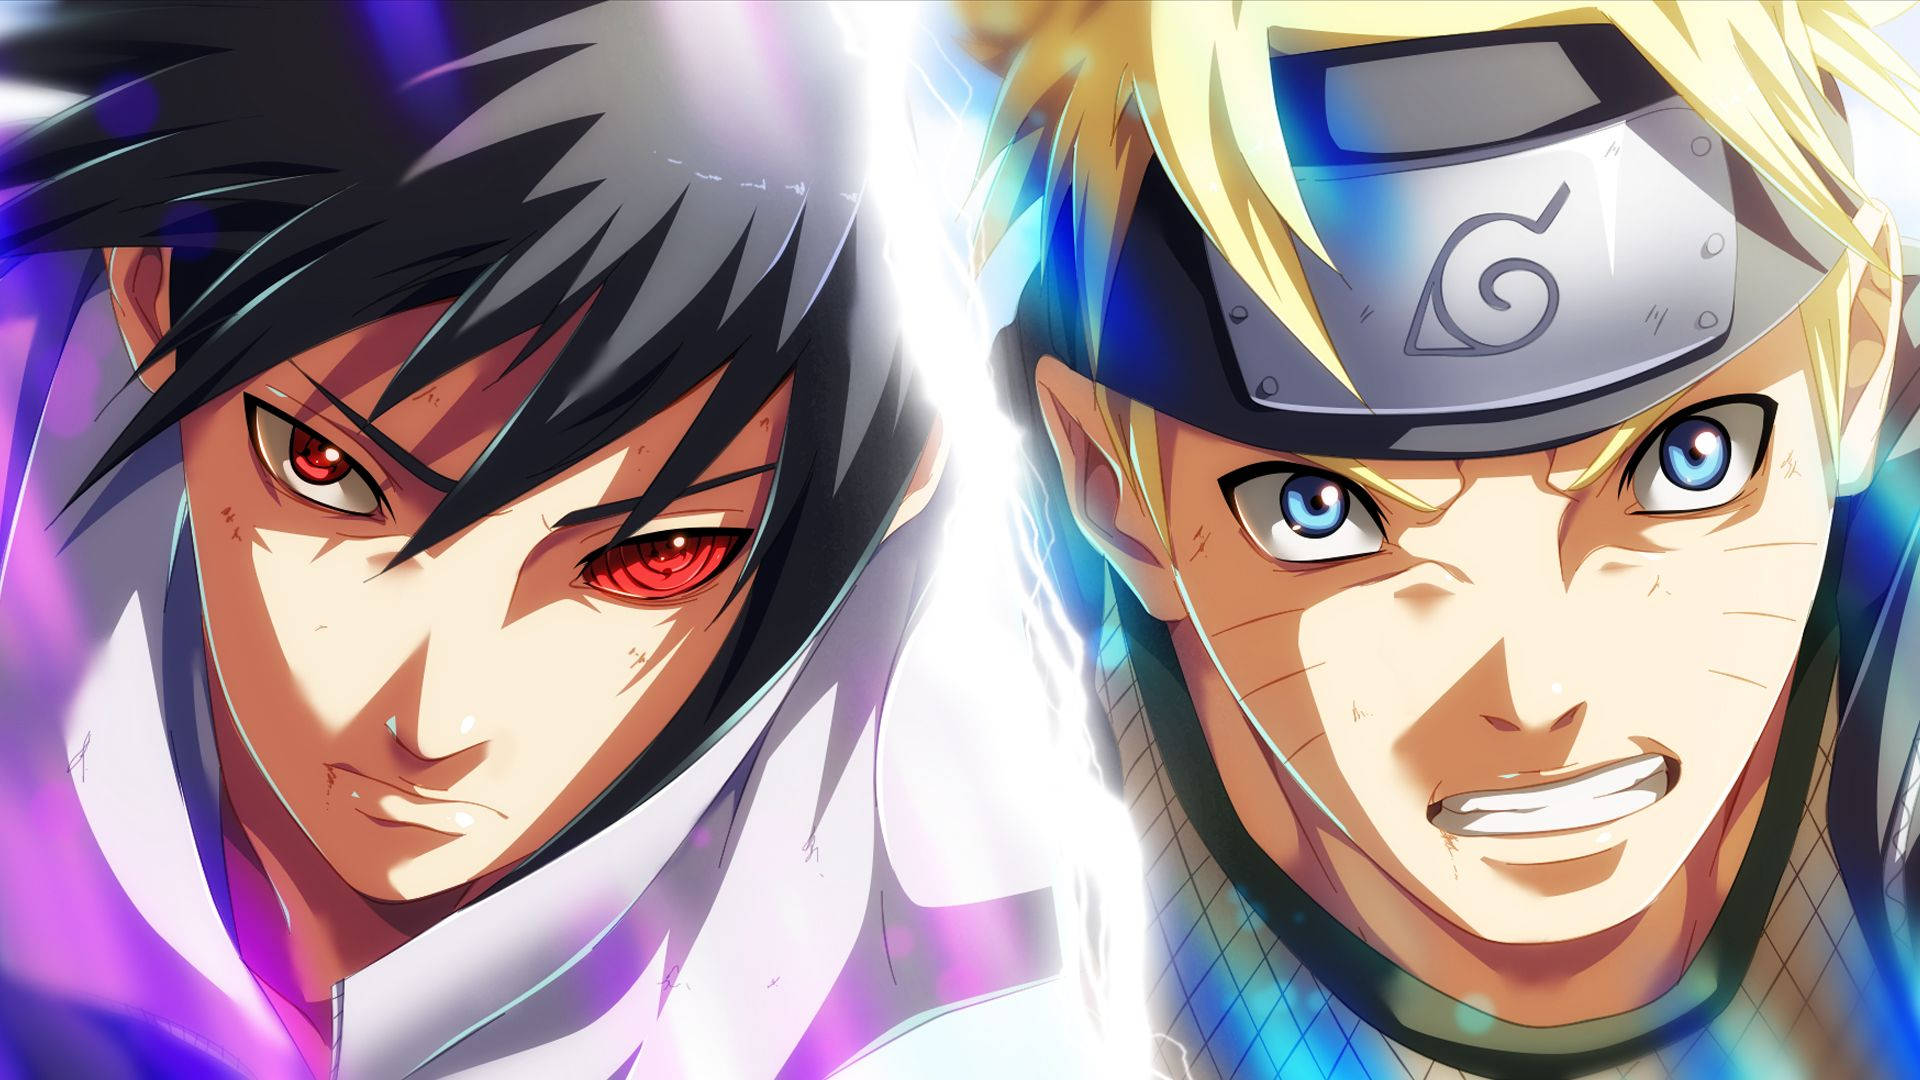 Anime Naruto And Sasuke With Sharingan Eye Wallpaper